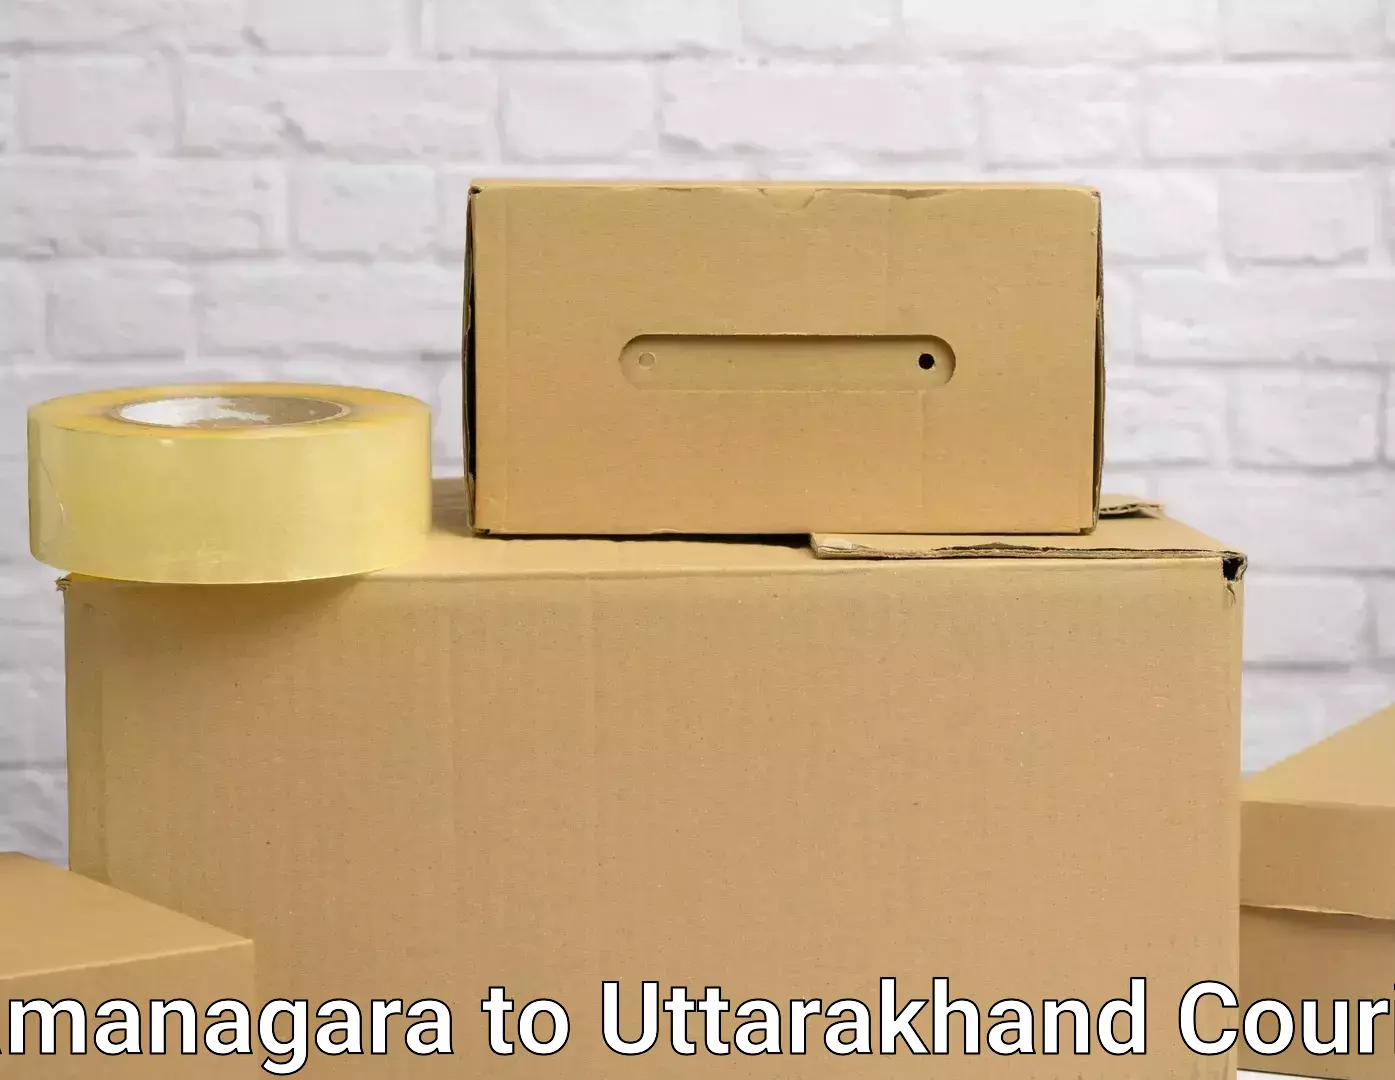 Online household goods transport in Ramanagara to IIT Roorkee